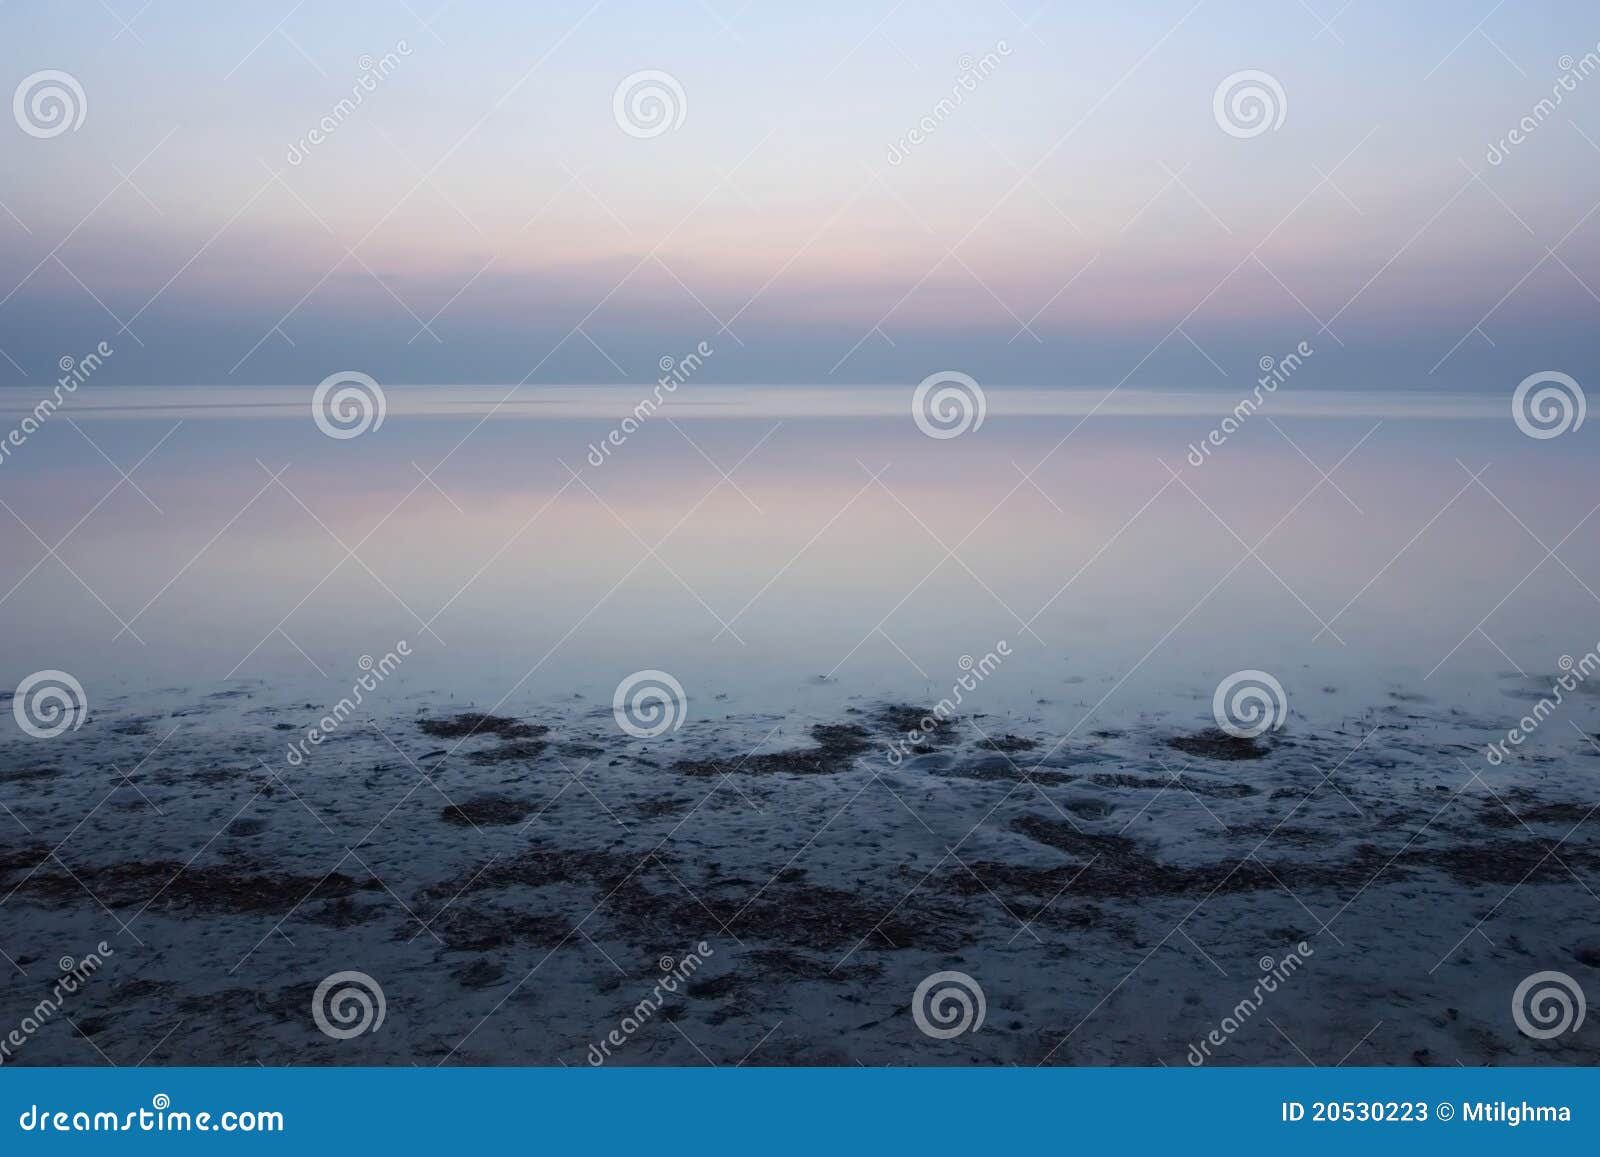 calm atlantic ocean sunrise